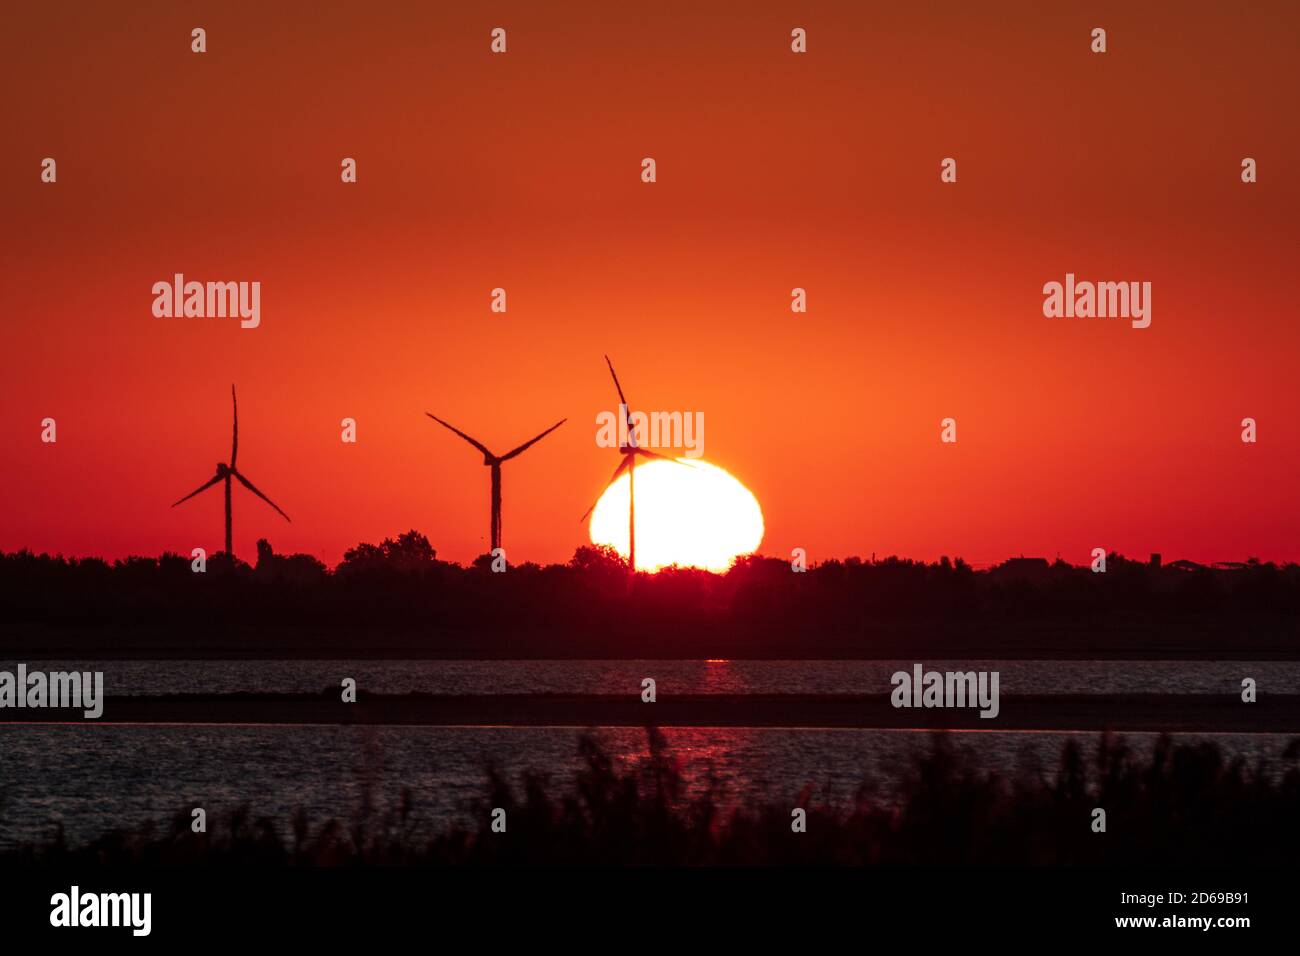 Windgeneratoren Farm Silhouette an der Küste im Sonnenaufgang rot orange vibrierenden Himmel und große aufgehende Sonne. Energieturbinen nachhaltige Industrie Stockfoto